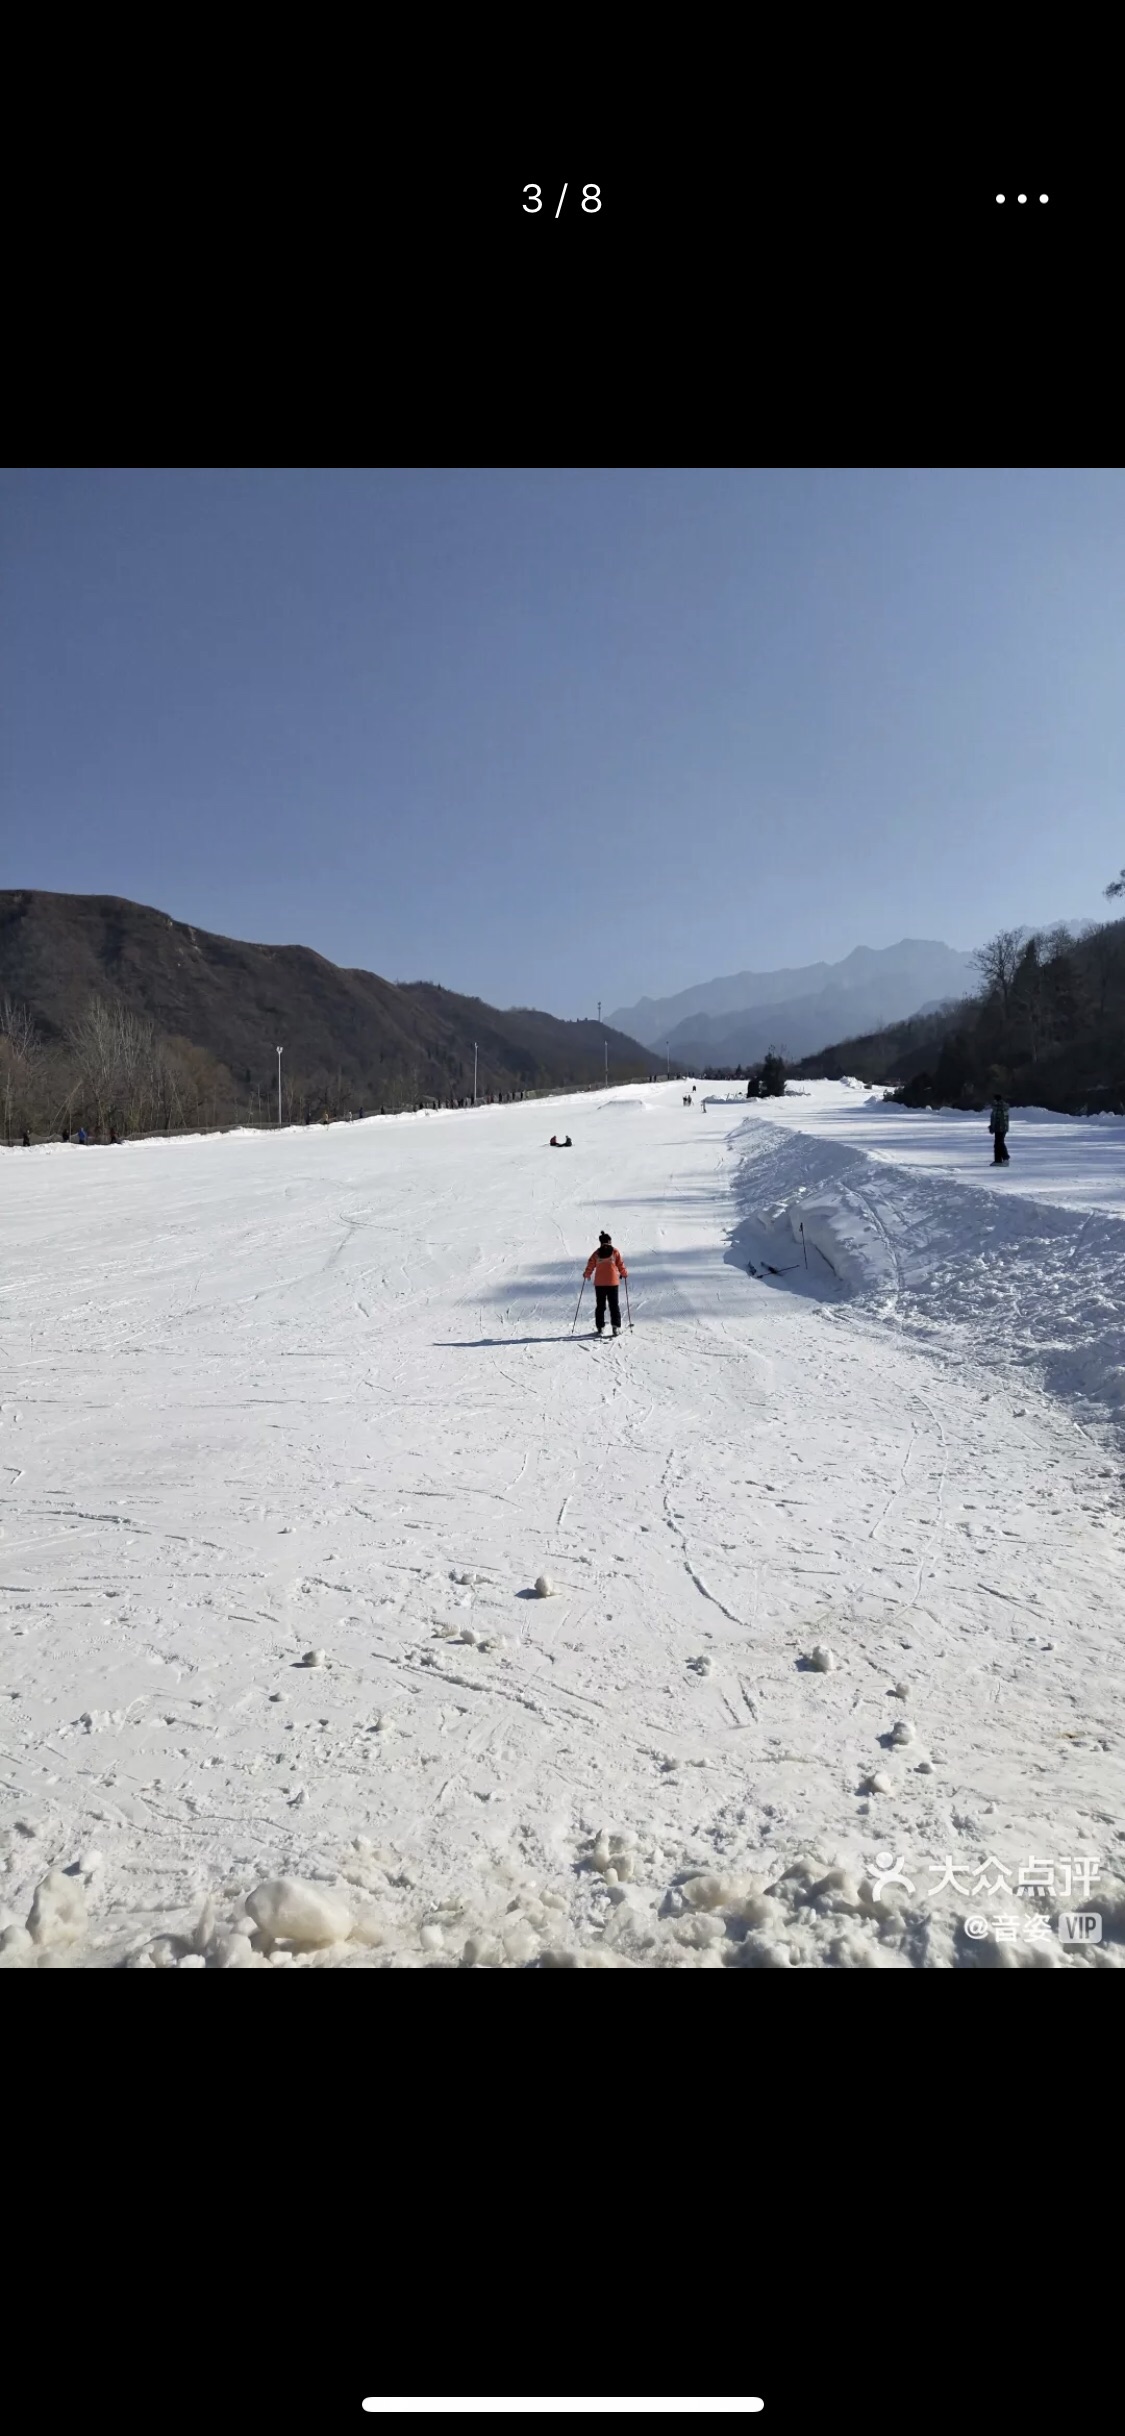 蓝田竹林畔滑雪场图片